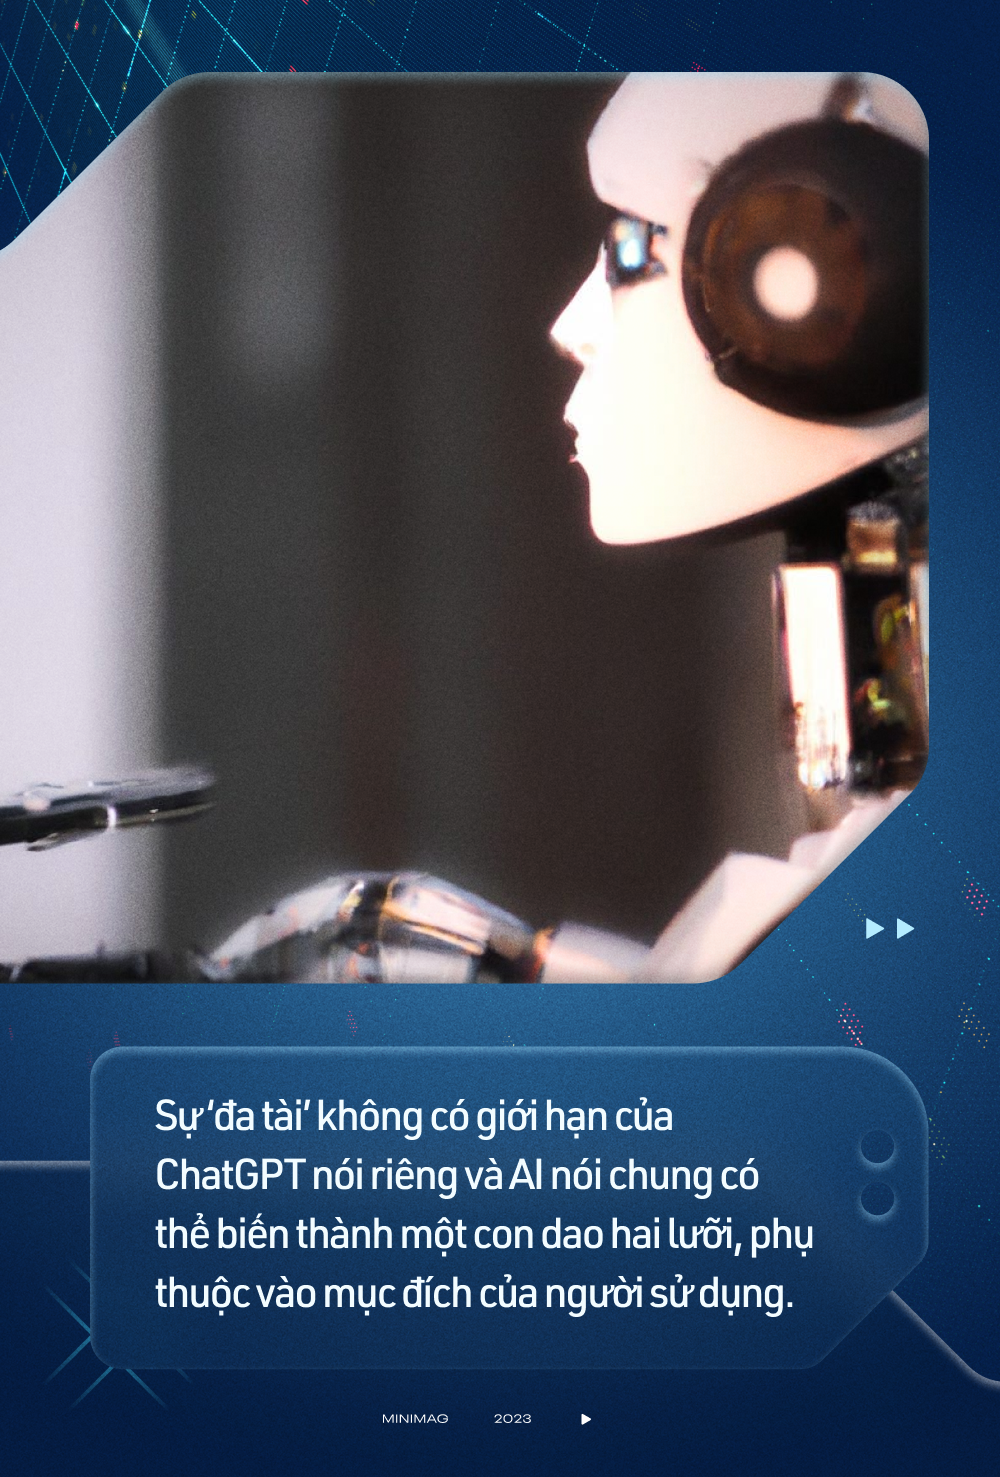 Không biết lập trình nhưng vẫn viết được mã độc: Cách chatbot AI thông minh nhất thế giới trở thành 'đồng phạm' của giới hacker mũ đen - Ảnh 2.